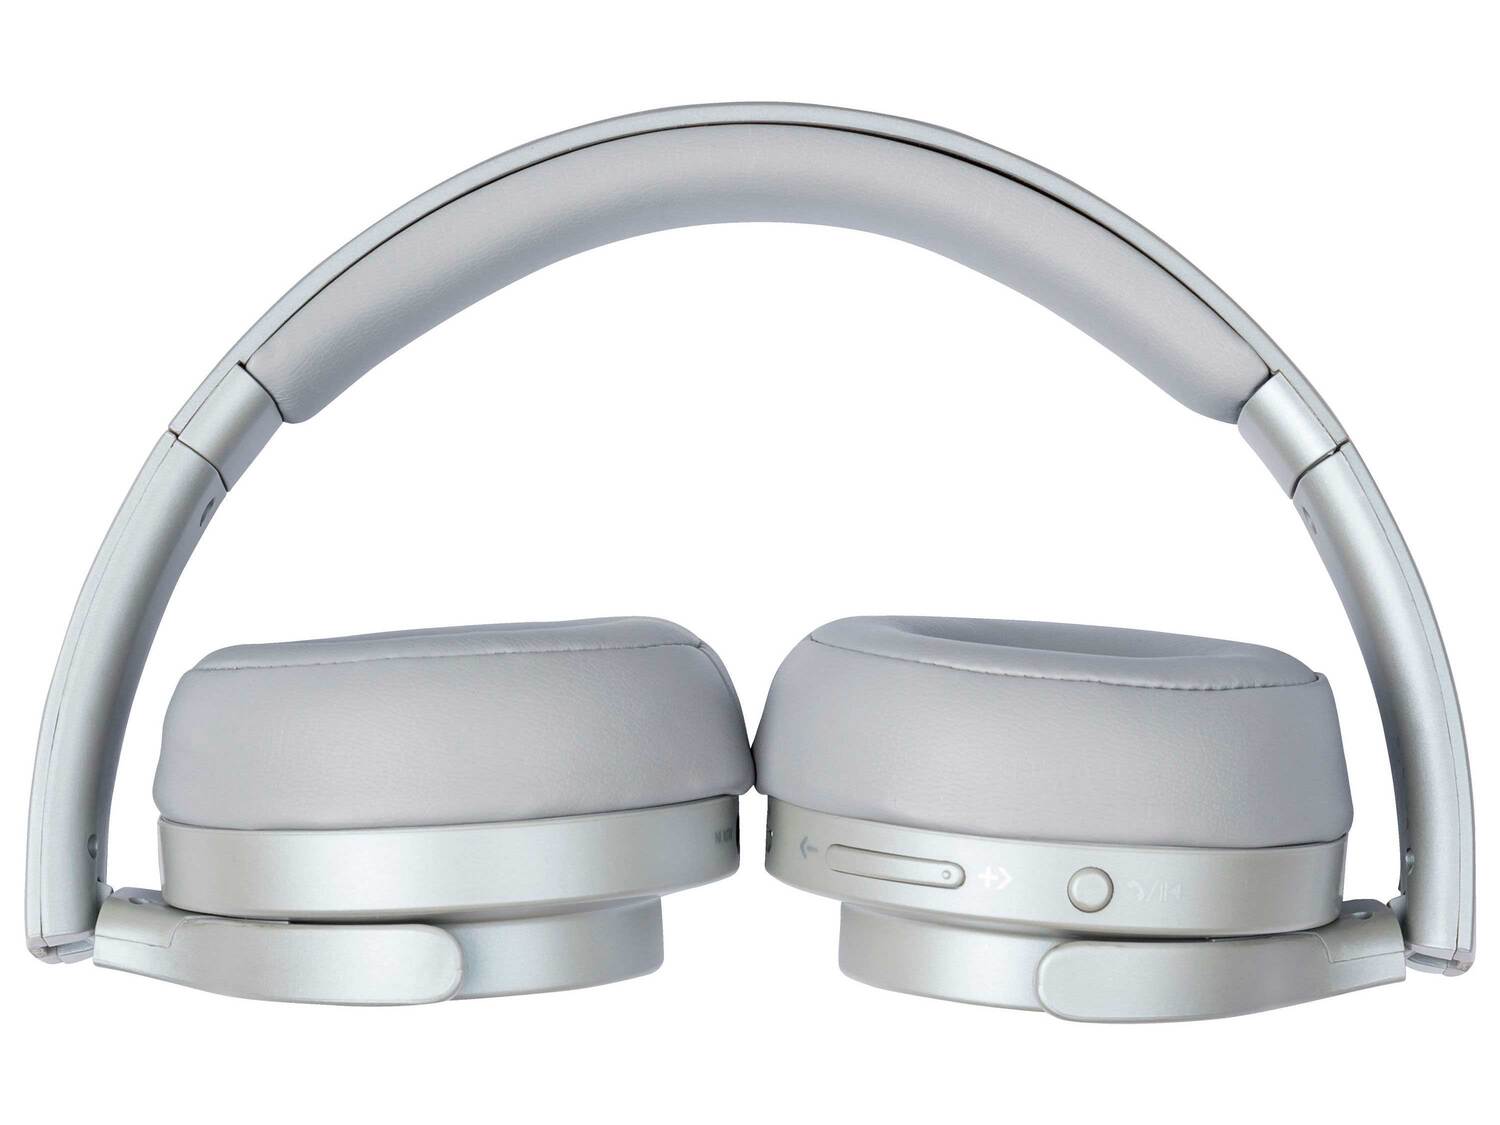 Słuchawki z funkcją Bluetooth® Silvercrest, cena 99,00 PLN 
- z funkcją głośnomówiącą ...